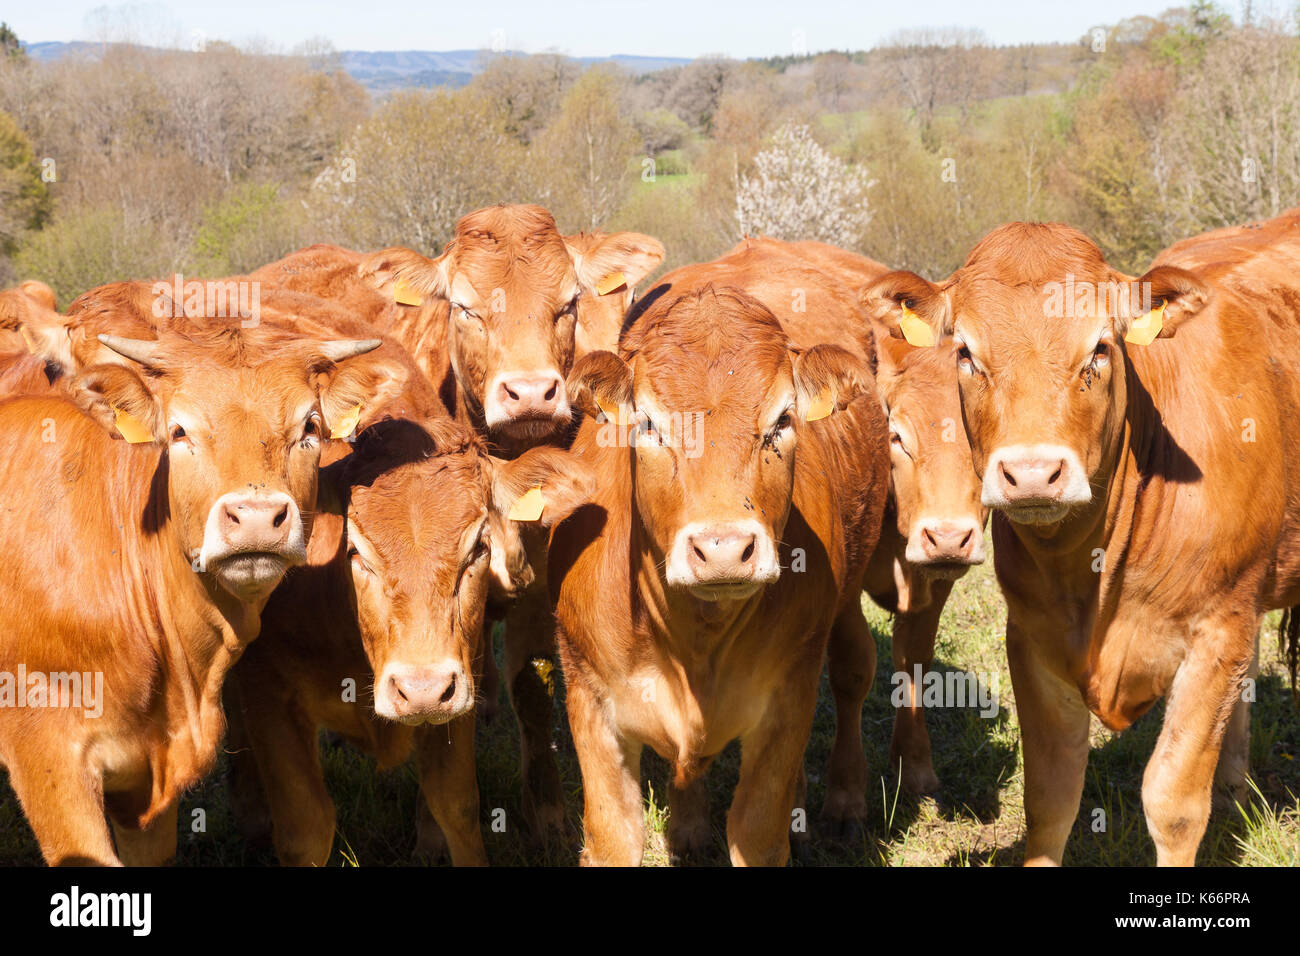 Troupeau de bovins Limousin jeunes curieux regroupé looking at camera avec taureaux, bœufs, génisses et une vache dans un pâturage de printemps Banque D'Images